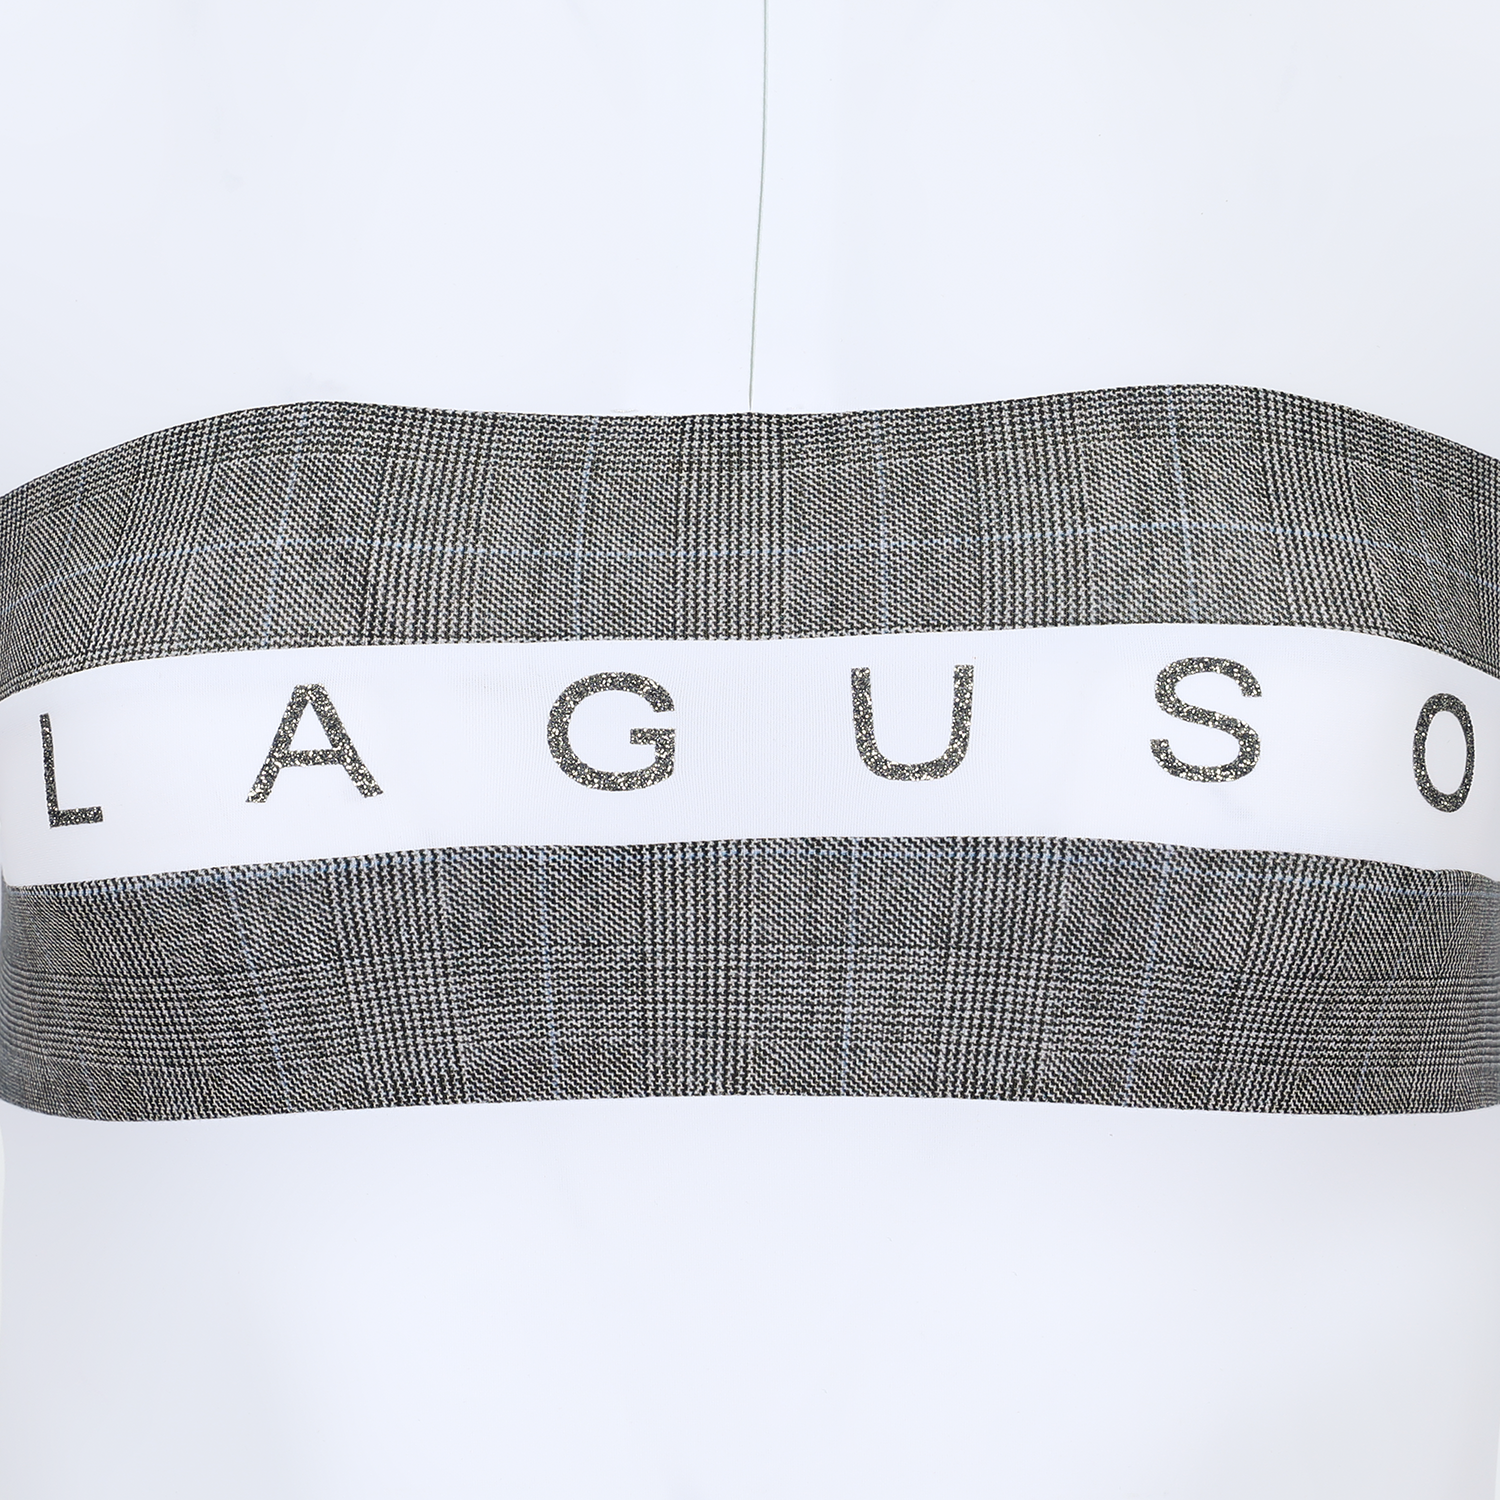 Laguso show shirt